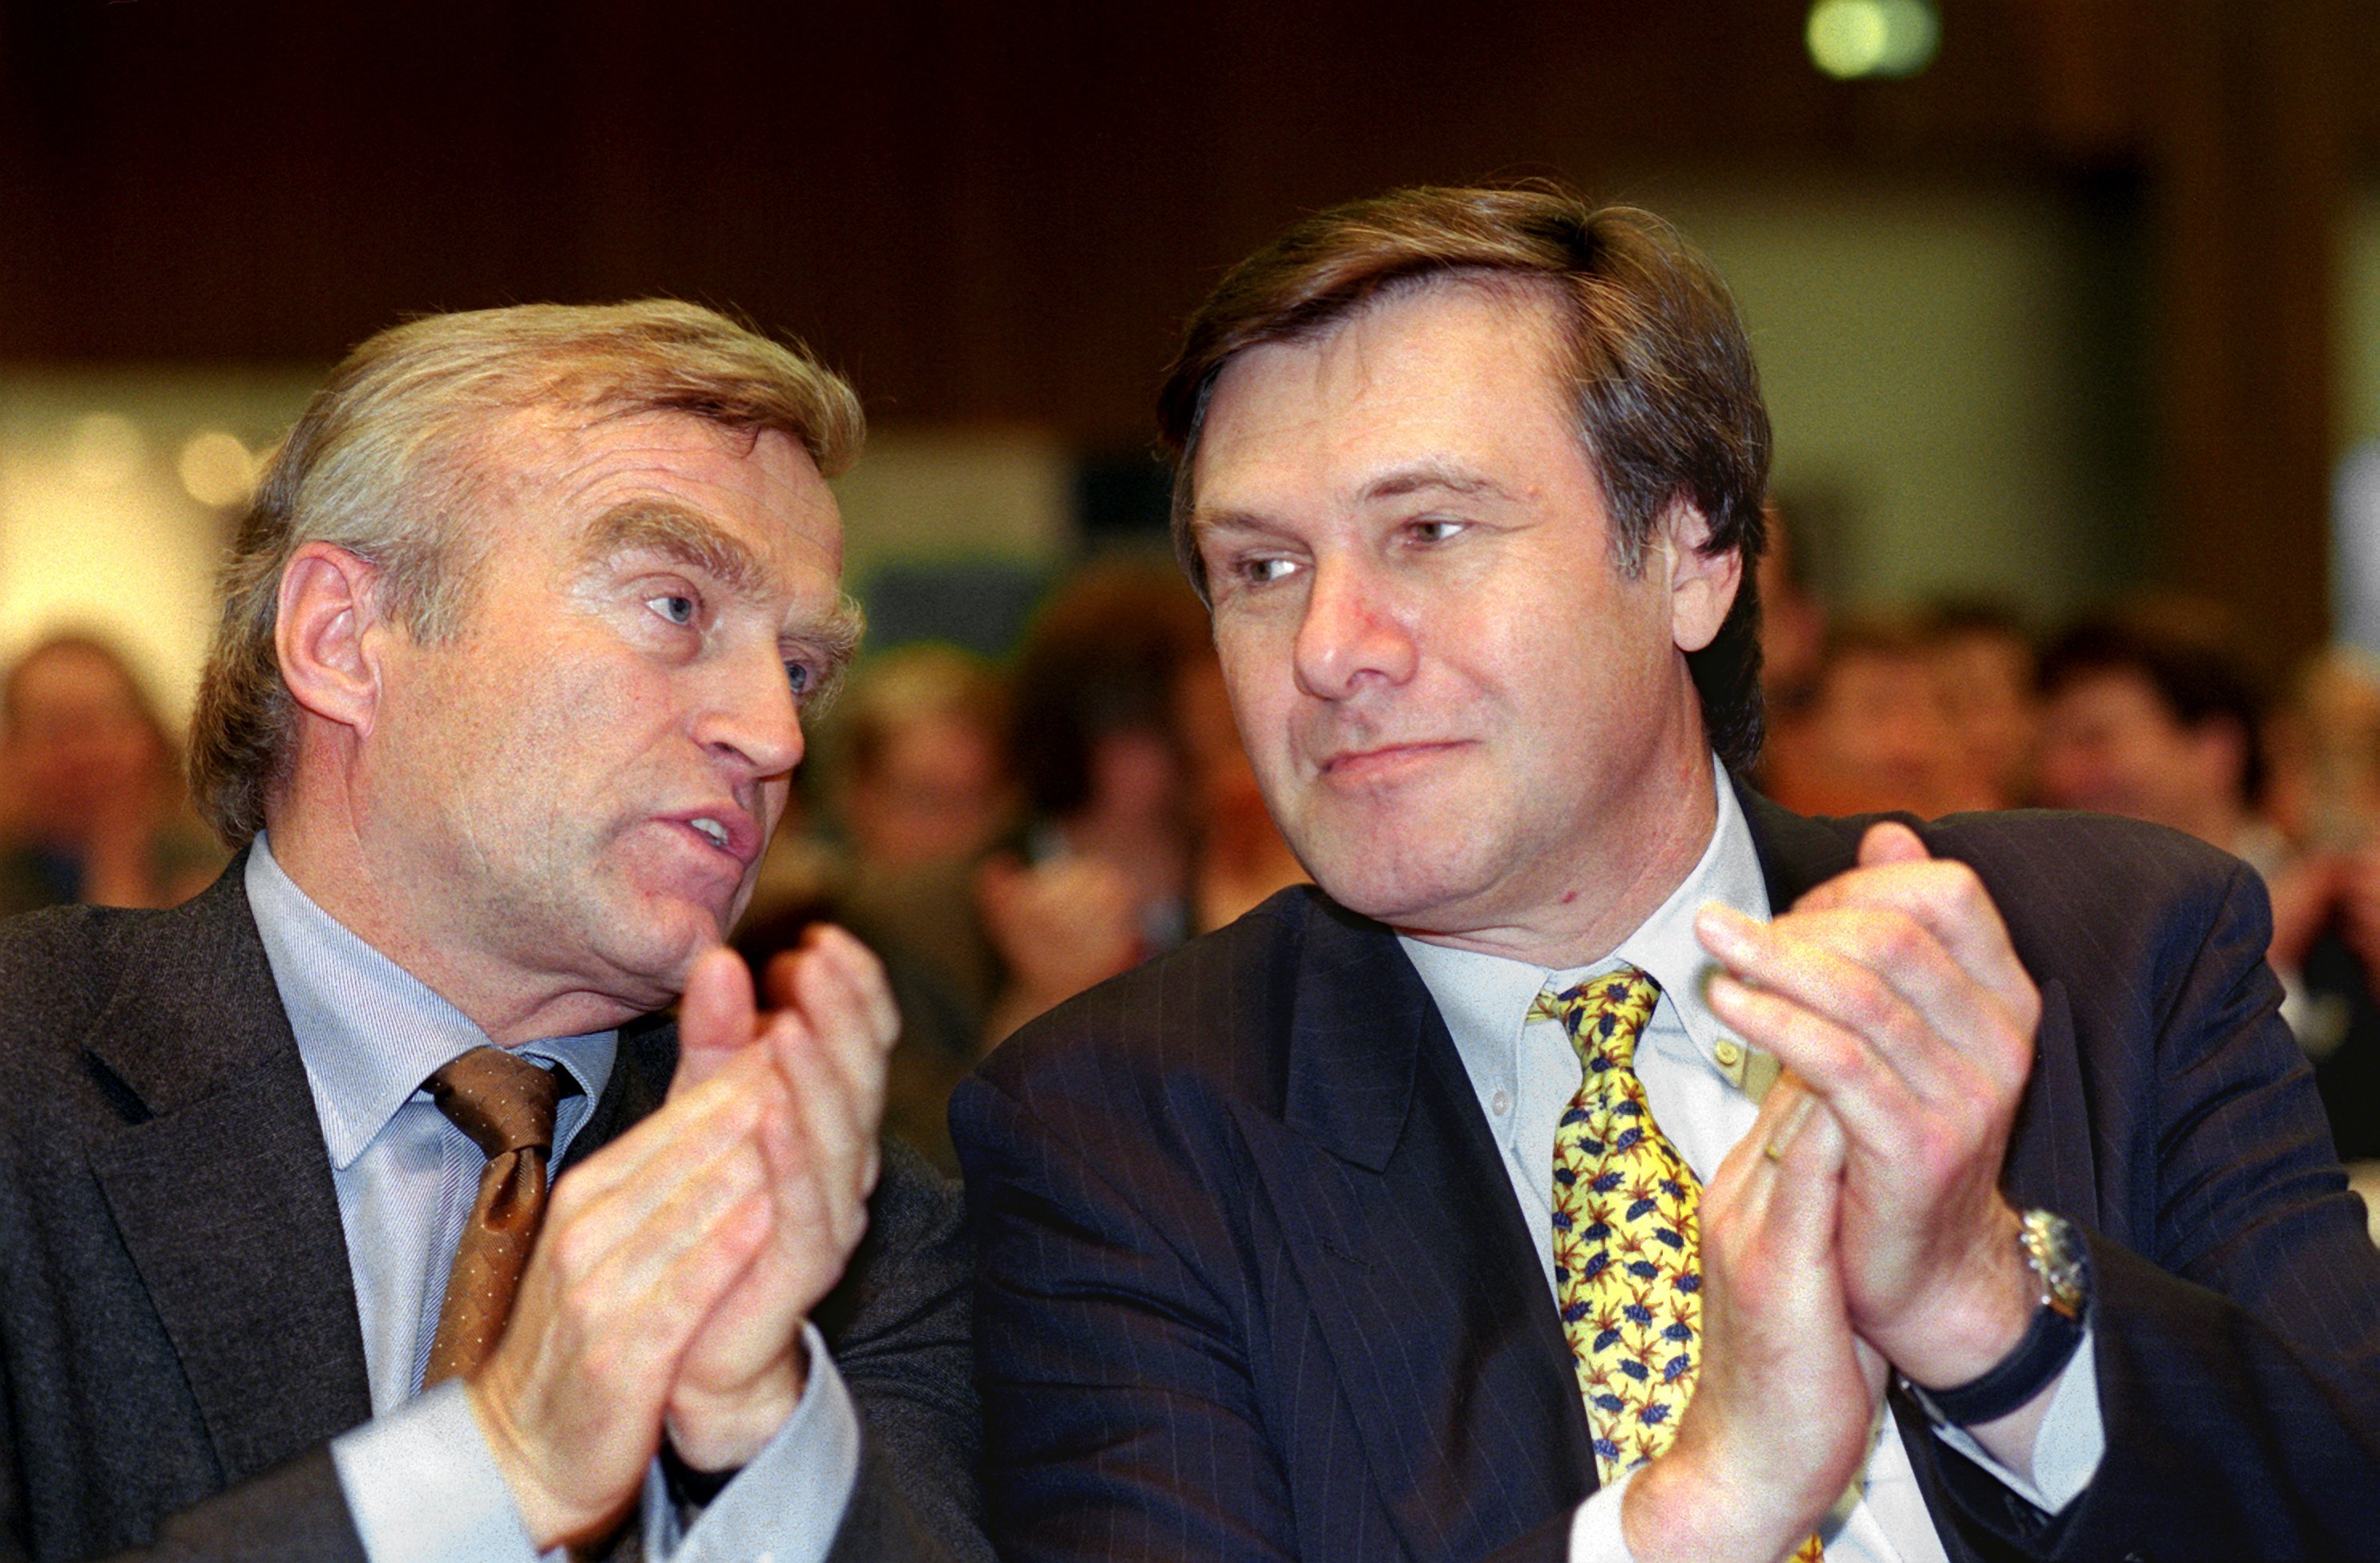 Helmut Haussmann und Wolfgang Gerhardt, 1999 auf dem Europatag der FDP in Frankfurt/Main